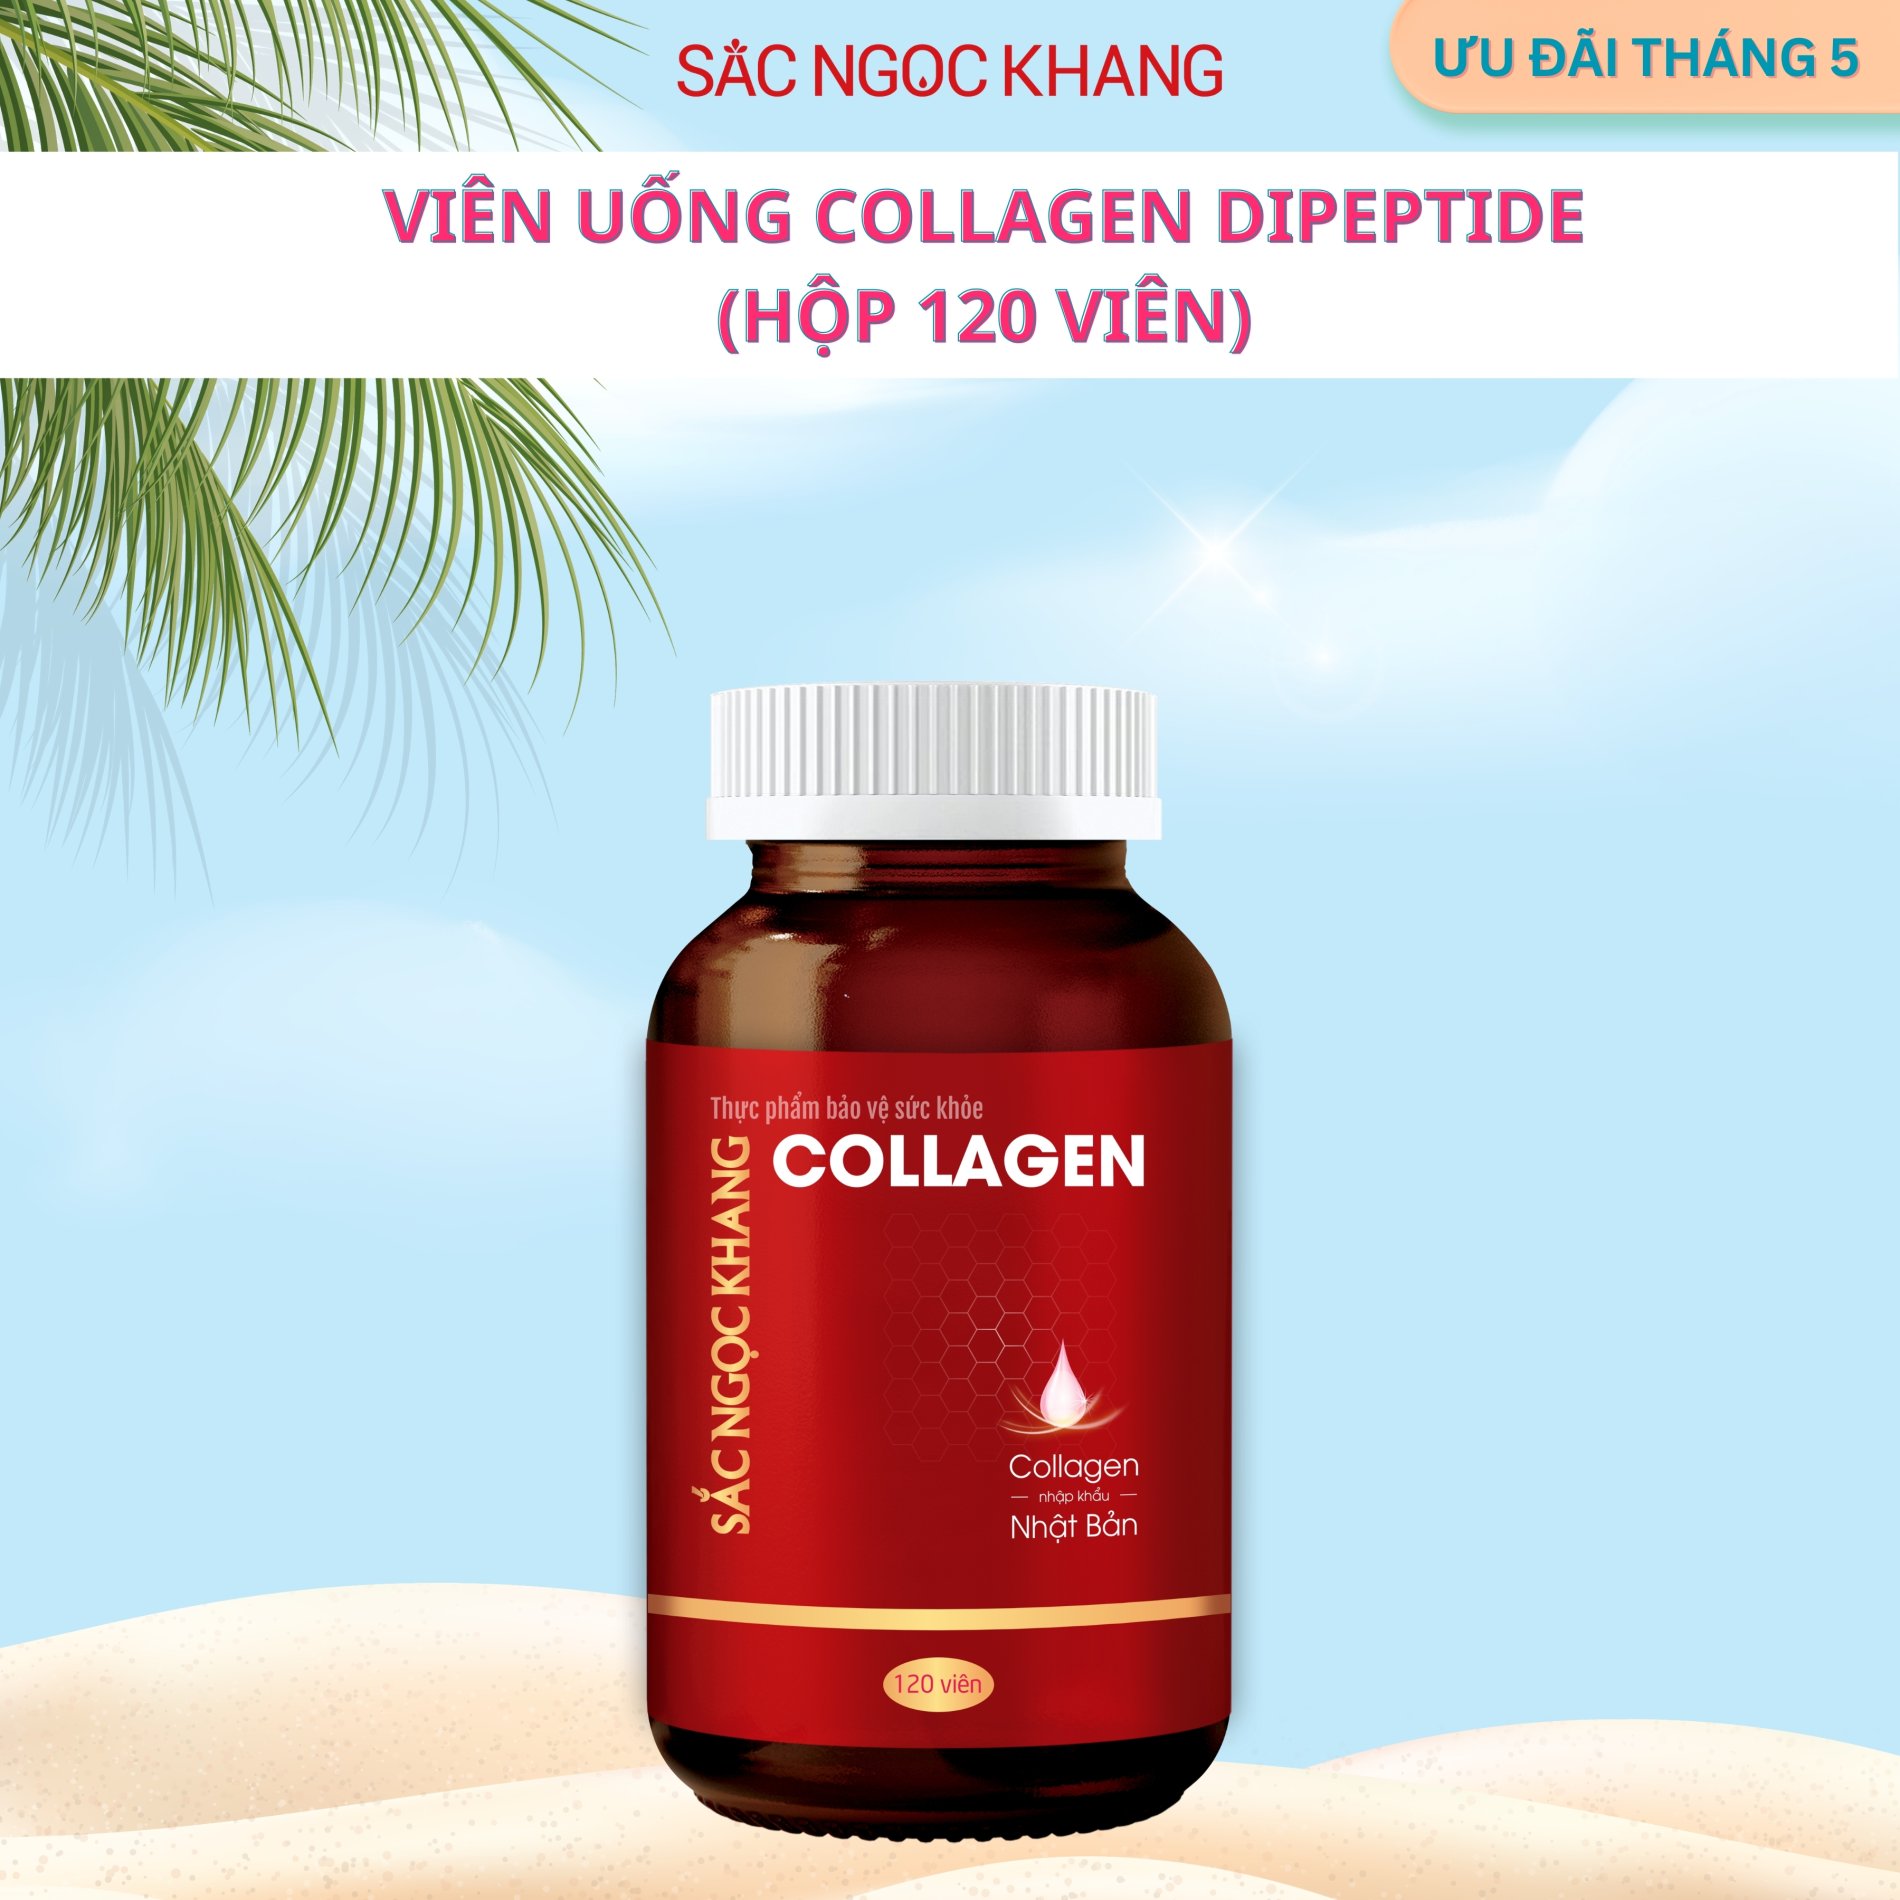 Viên Uống Collagen Dipeptide Sắc Ngọc Khang [Hộp 120 Viên]